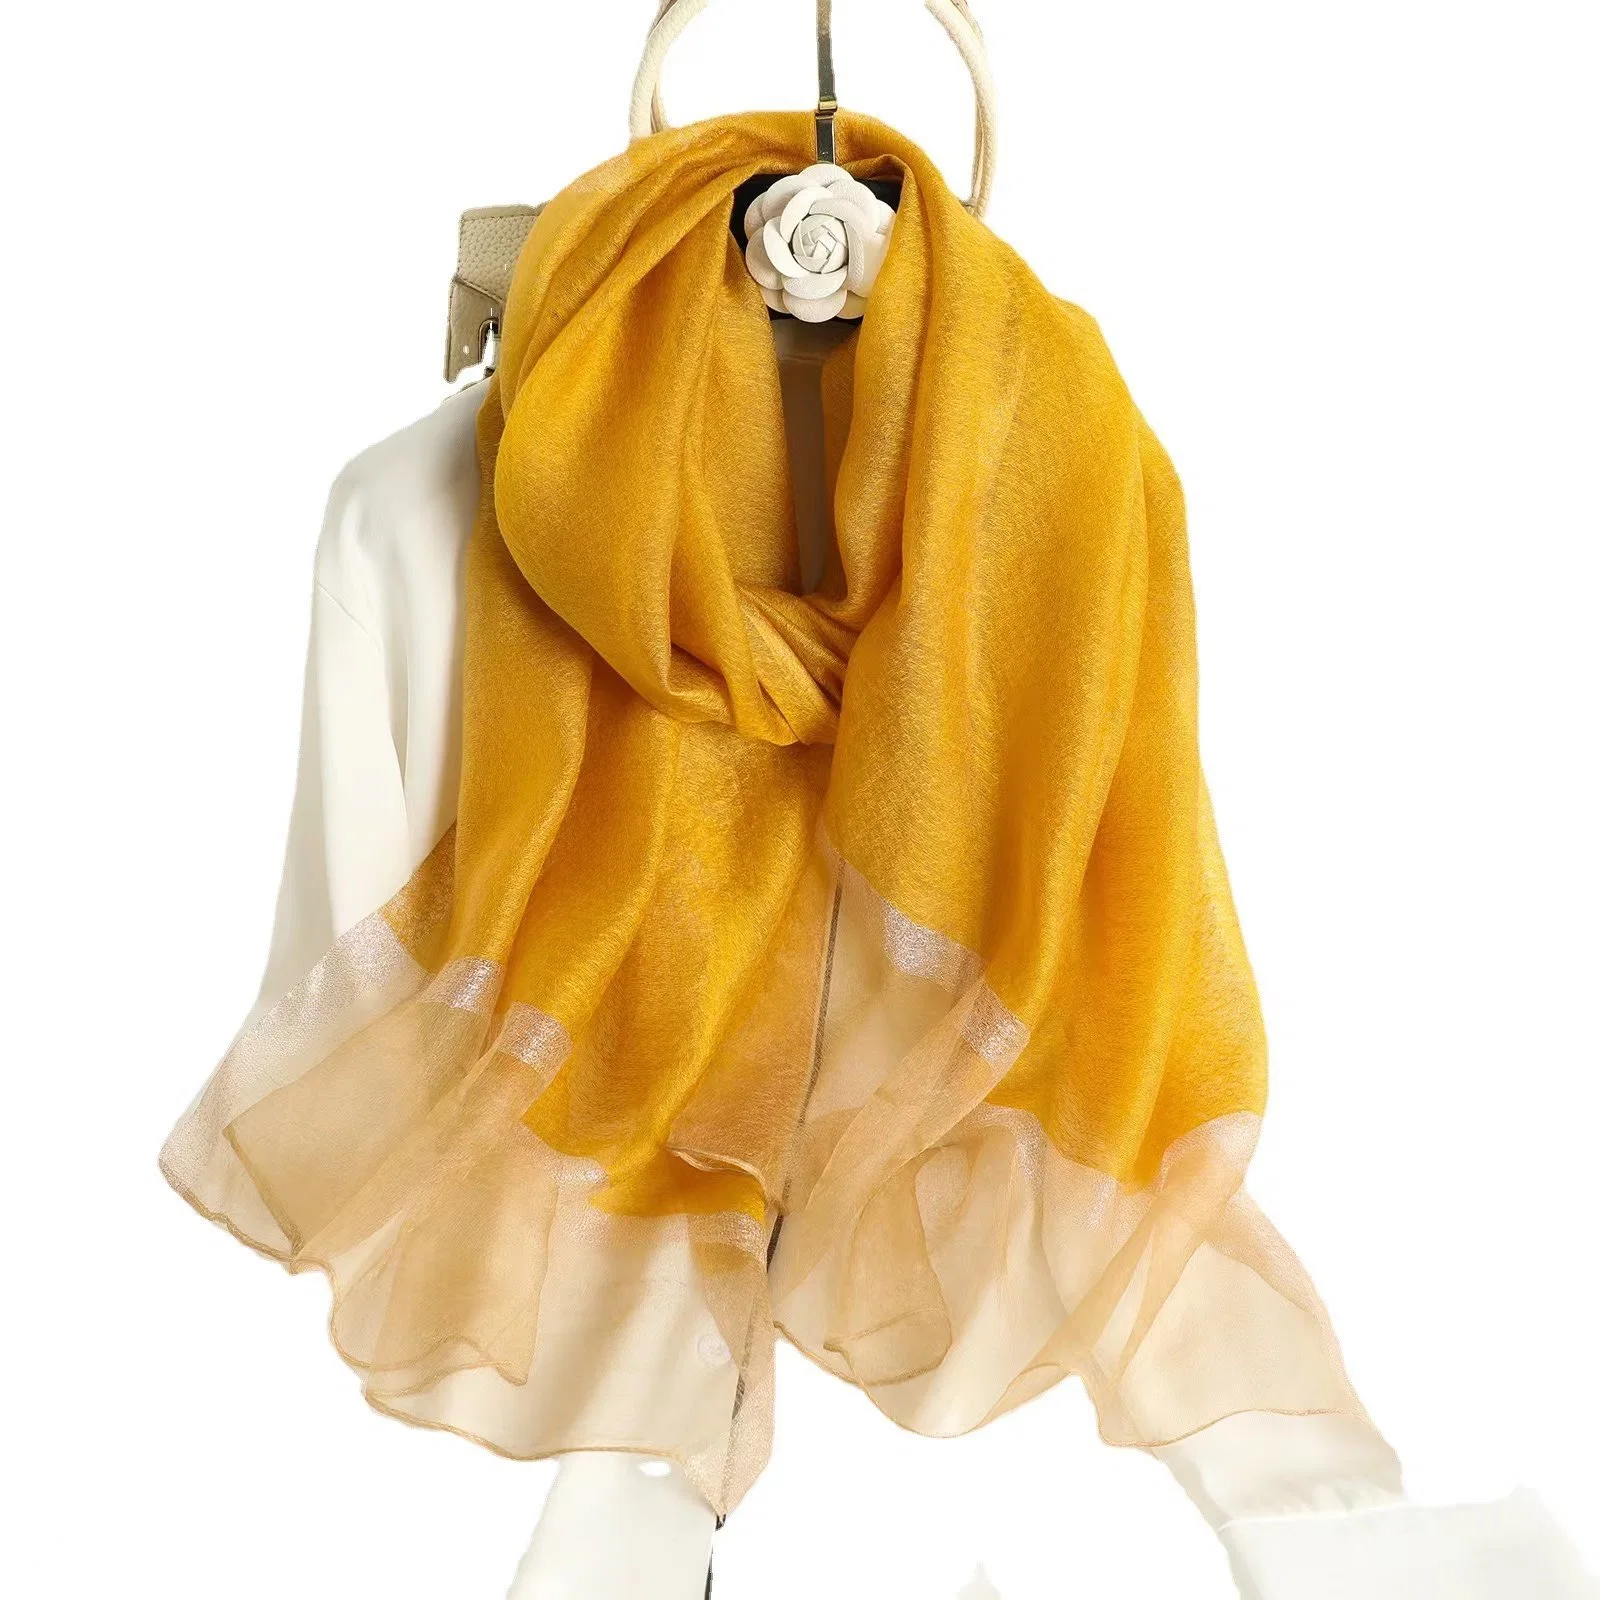 وشاح طويل متنوع الاستخدامات من النساء، أزياء الربيع النقية الألوان 100%من Scref وشاح حرير ذهبي اللون من الحرير محشو بالواقيات من الشمس